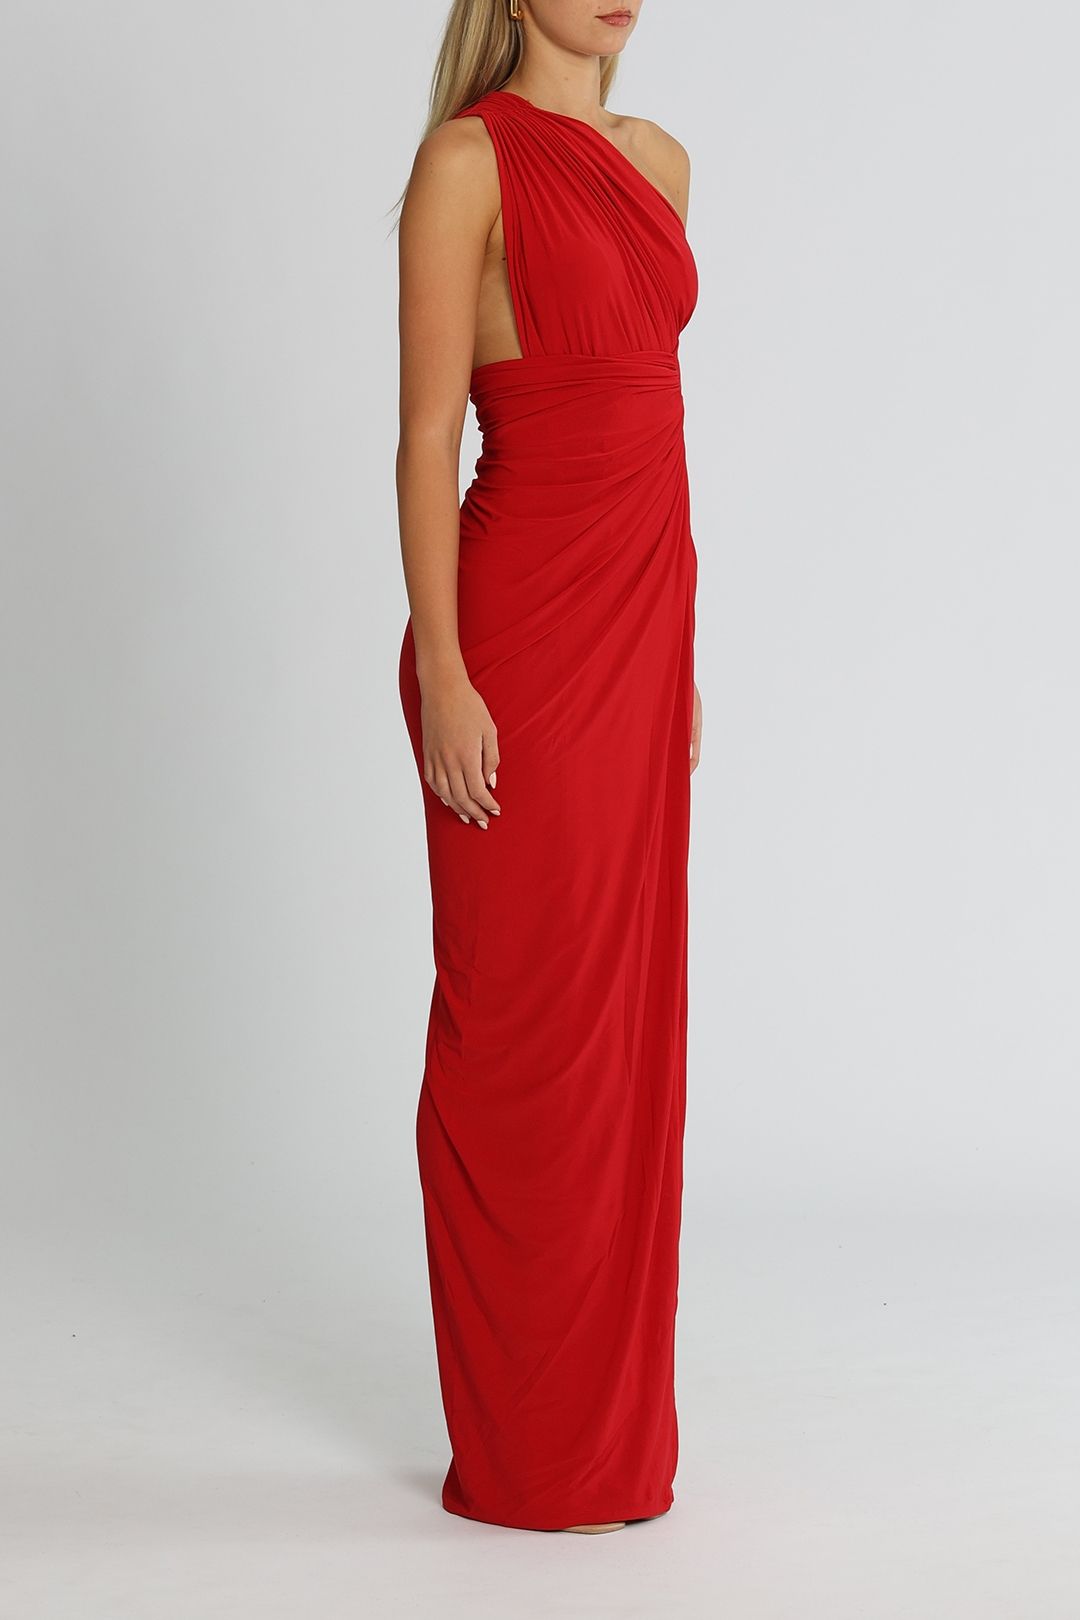 J. Angelique Valeria Gown Red Floor Length